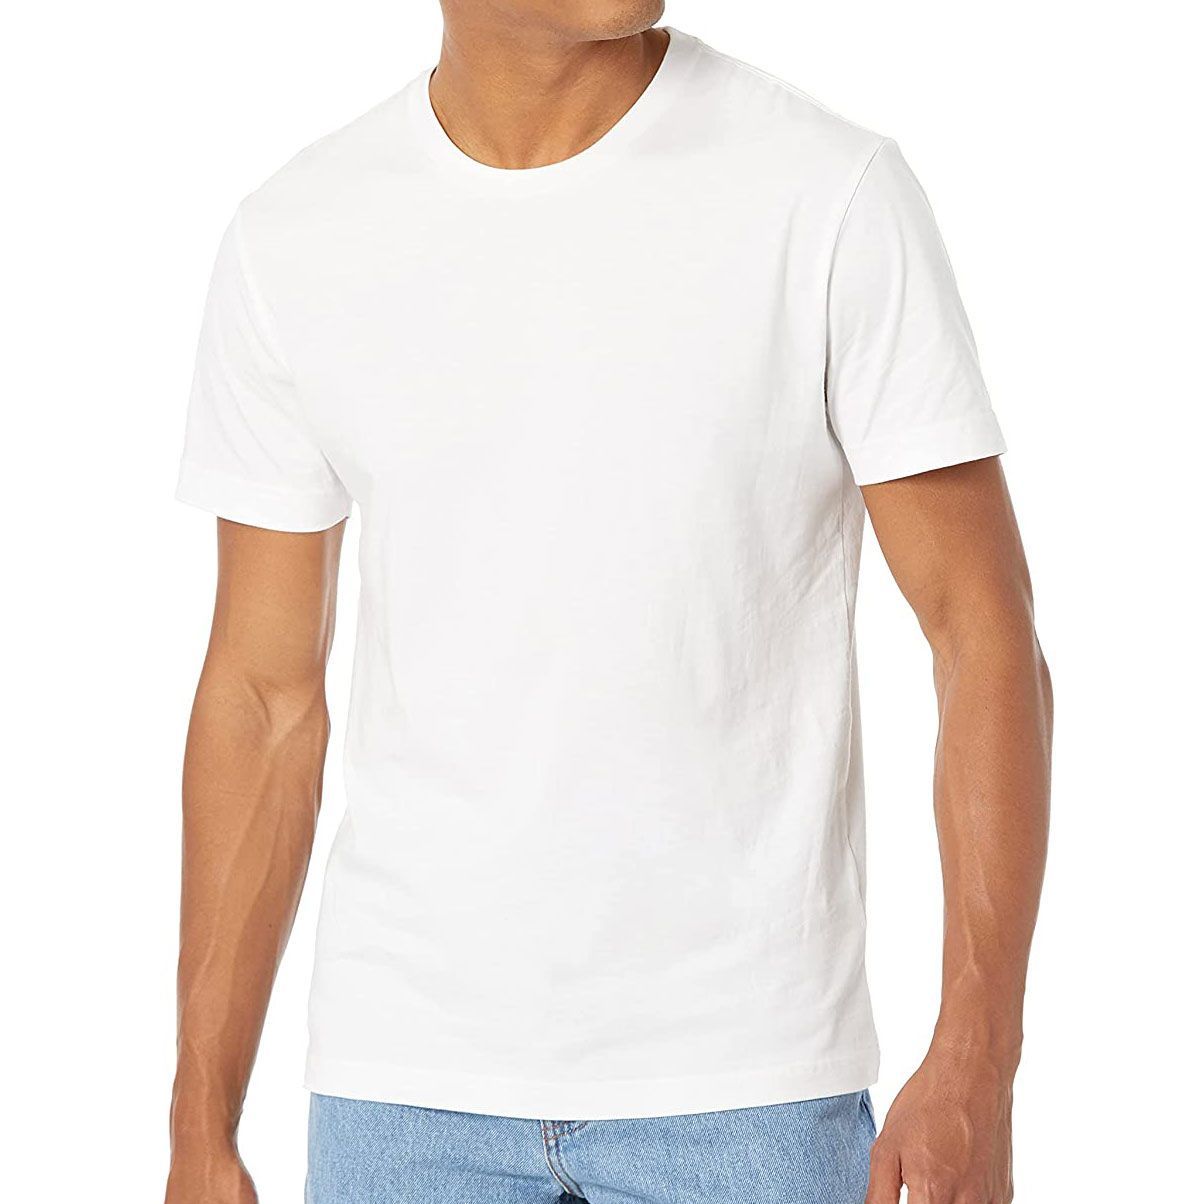 plain white t shirt 12 months